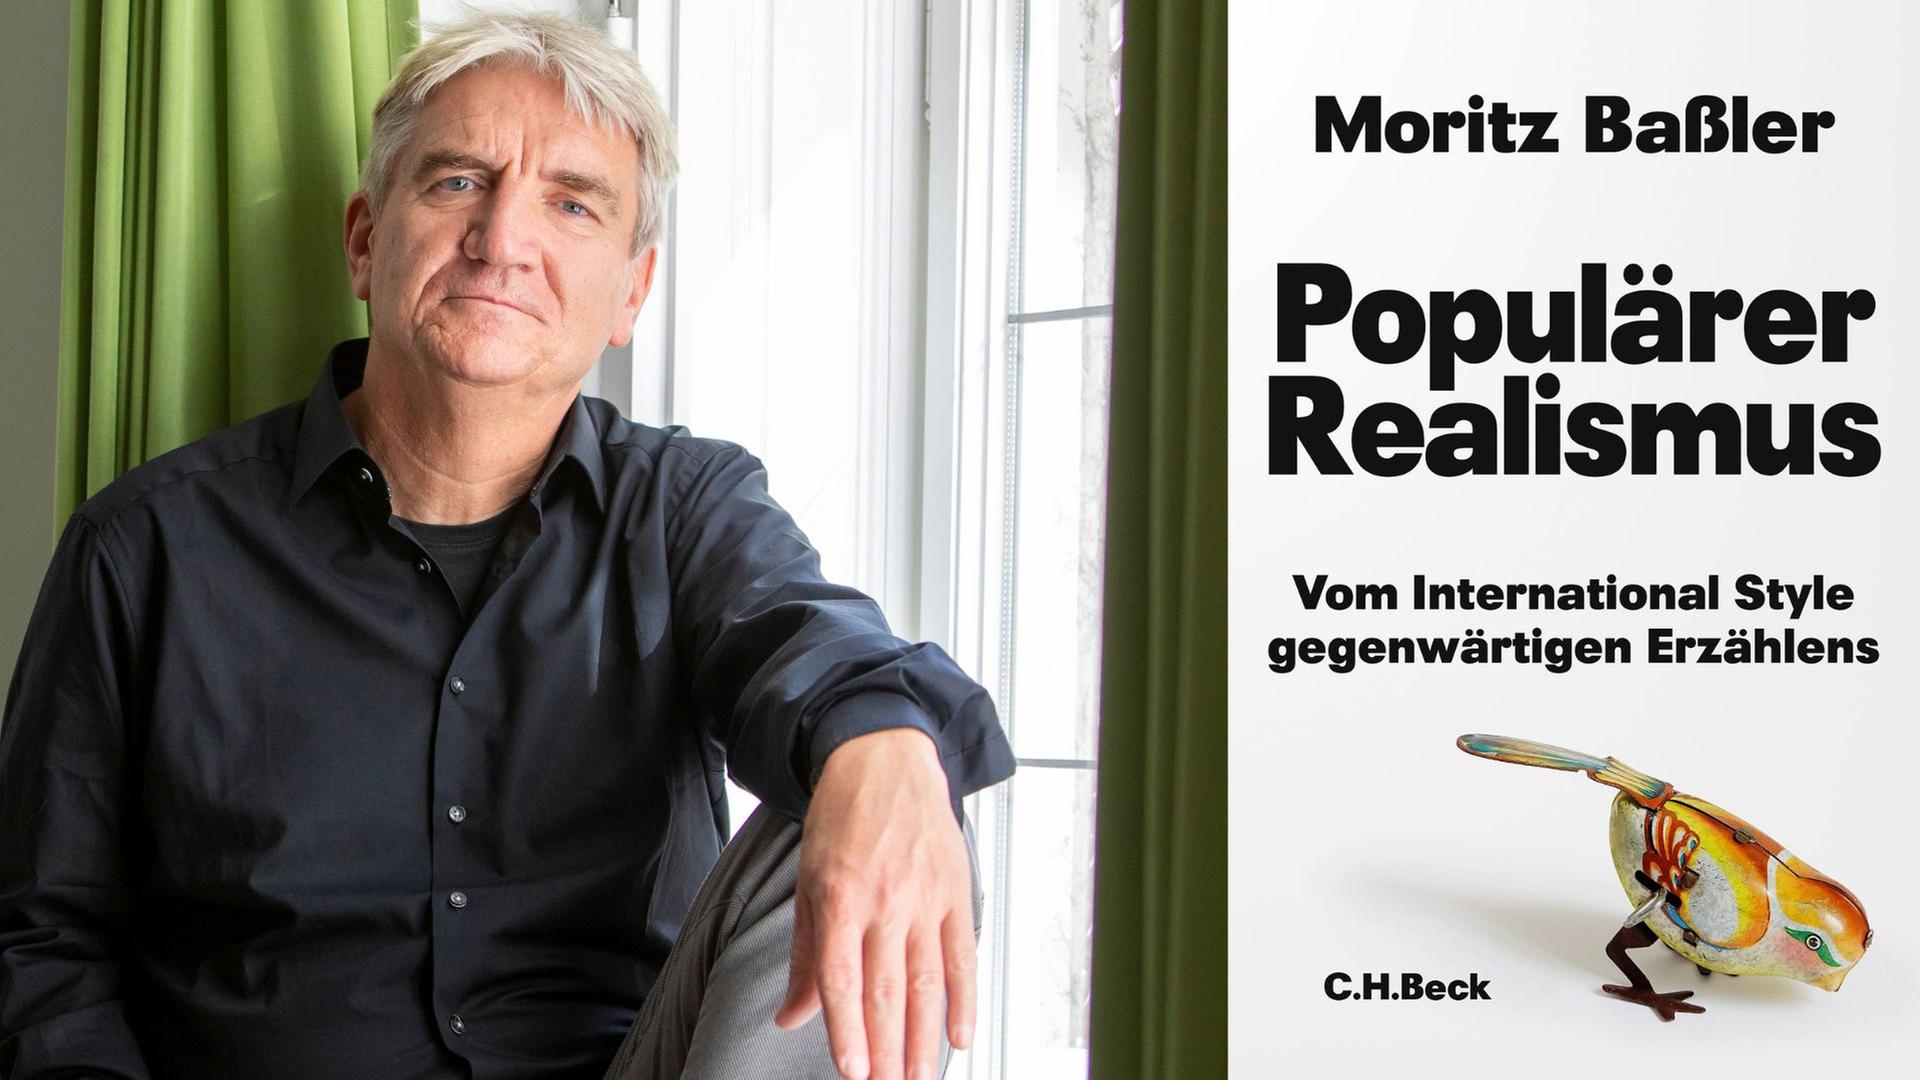 Moritz Baßler: "Populärer Realismus"
Zu sehen sind der Autor und das Buchcover